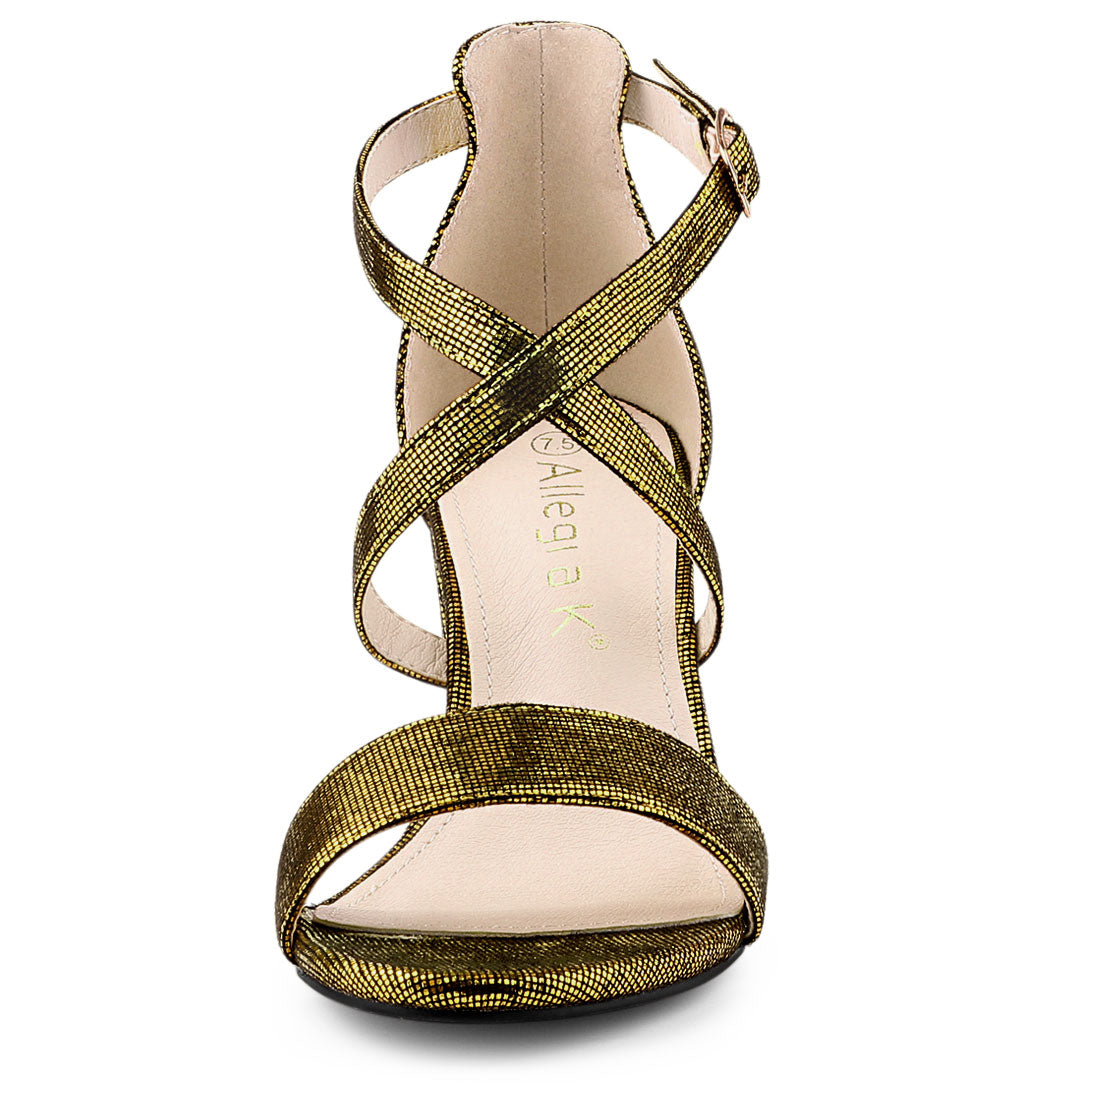 Allegra K Colorful Cross Strappy Adjustable Buckle Block Heel Sandals